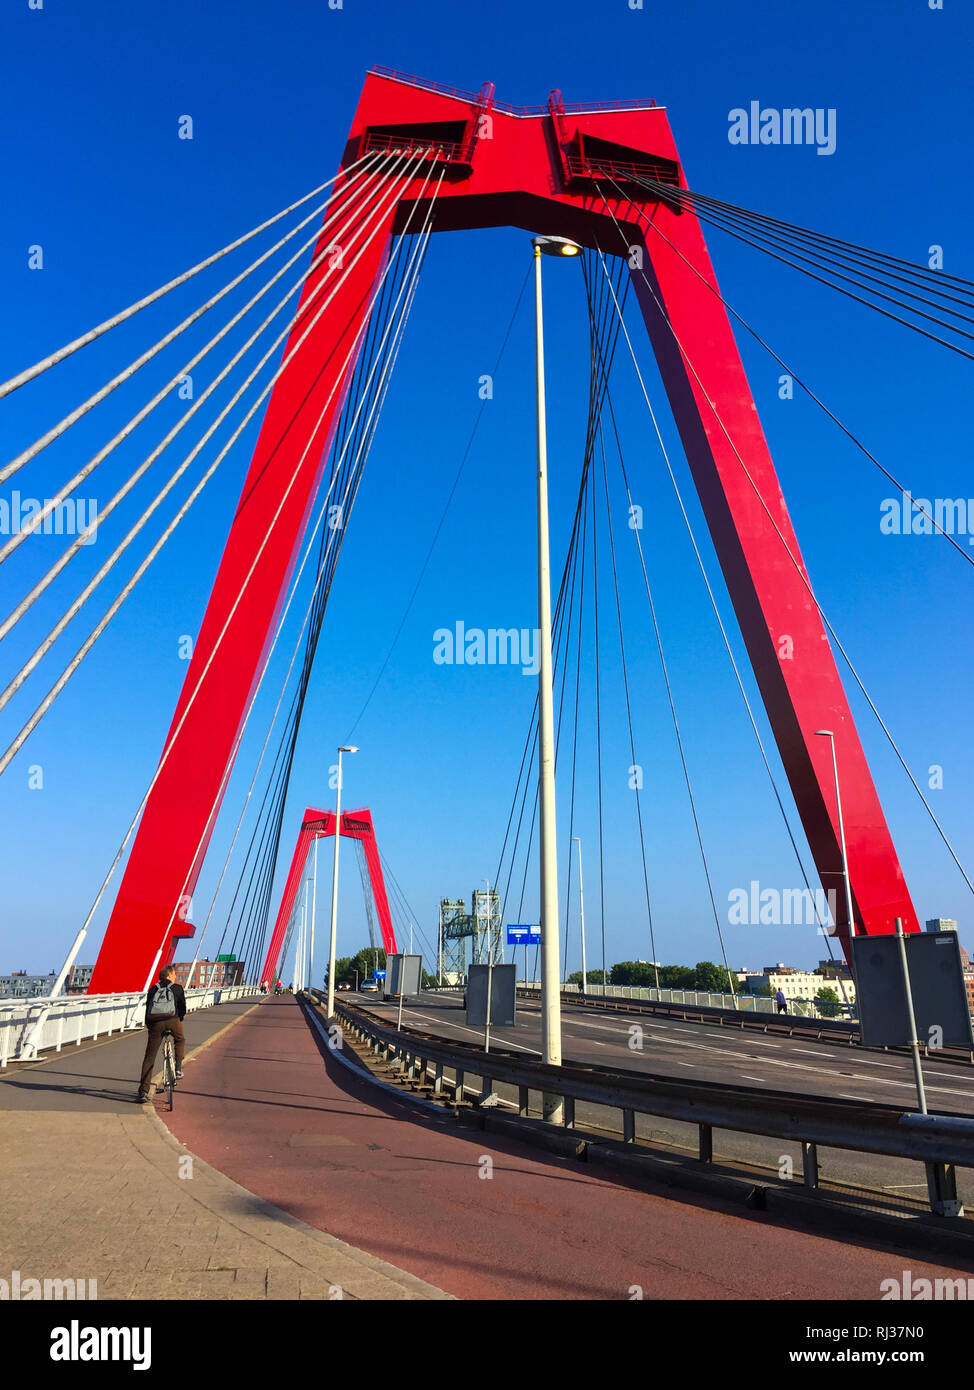 Ciclista attraversando il ponte Willemsbrug spanning la Nieuwe Maas river a Rotterdam, Paesi Bassi. Ponte rosso di tralicci e cavi contro il cielo blu Foto Stock